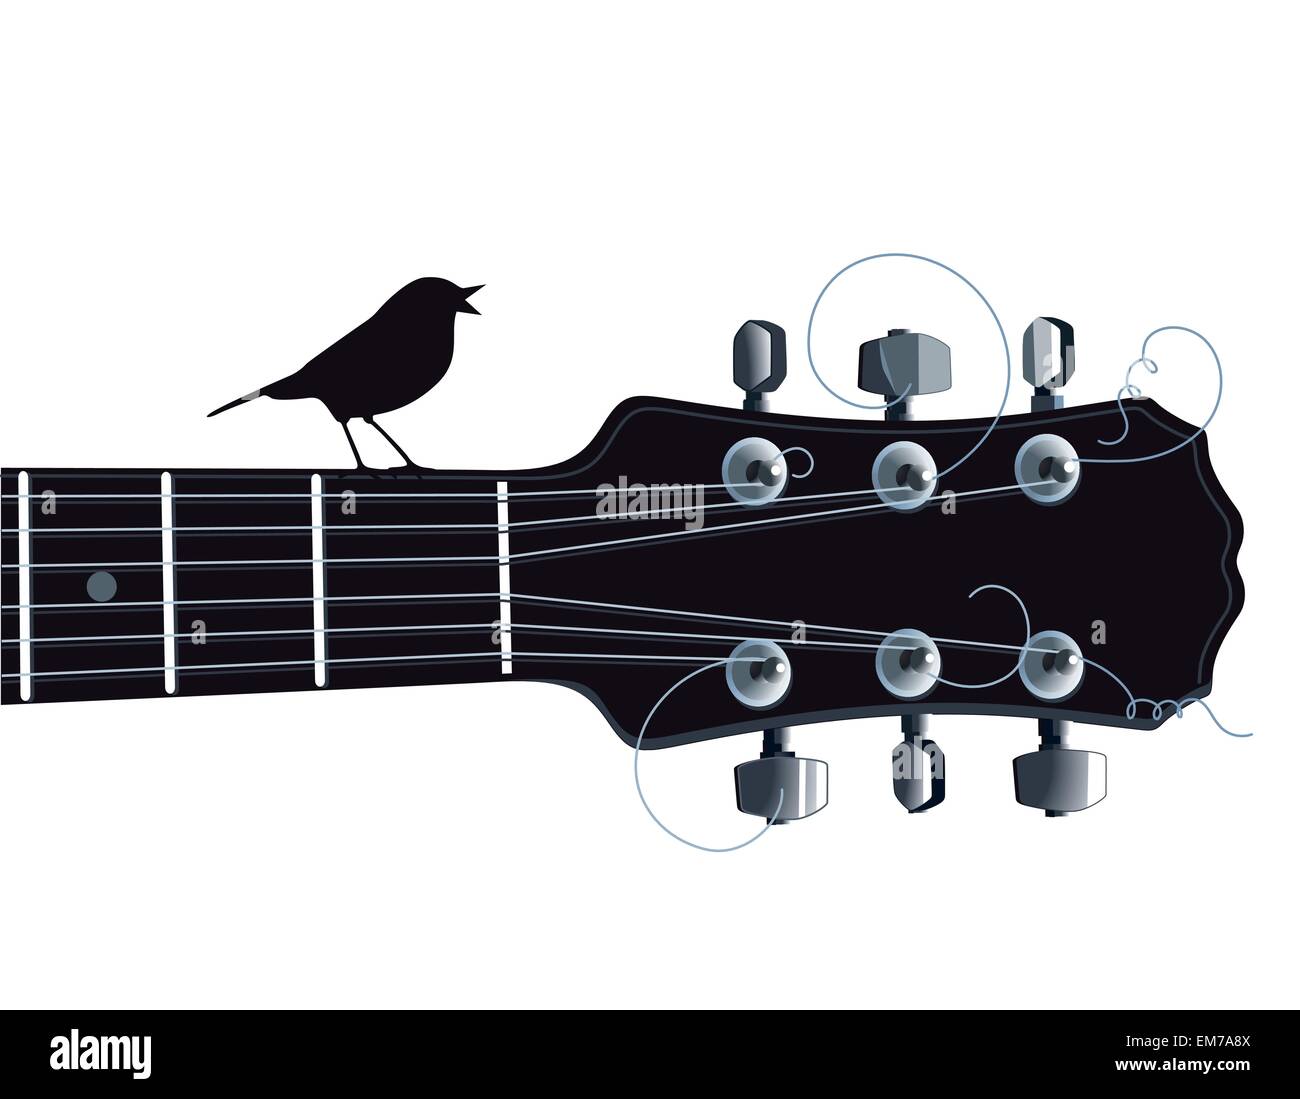 Oiseau chanteur avec guitare Illustration de Vecteur